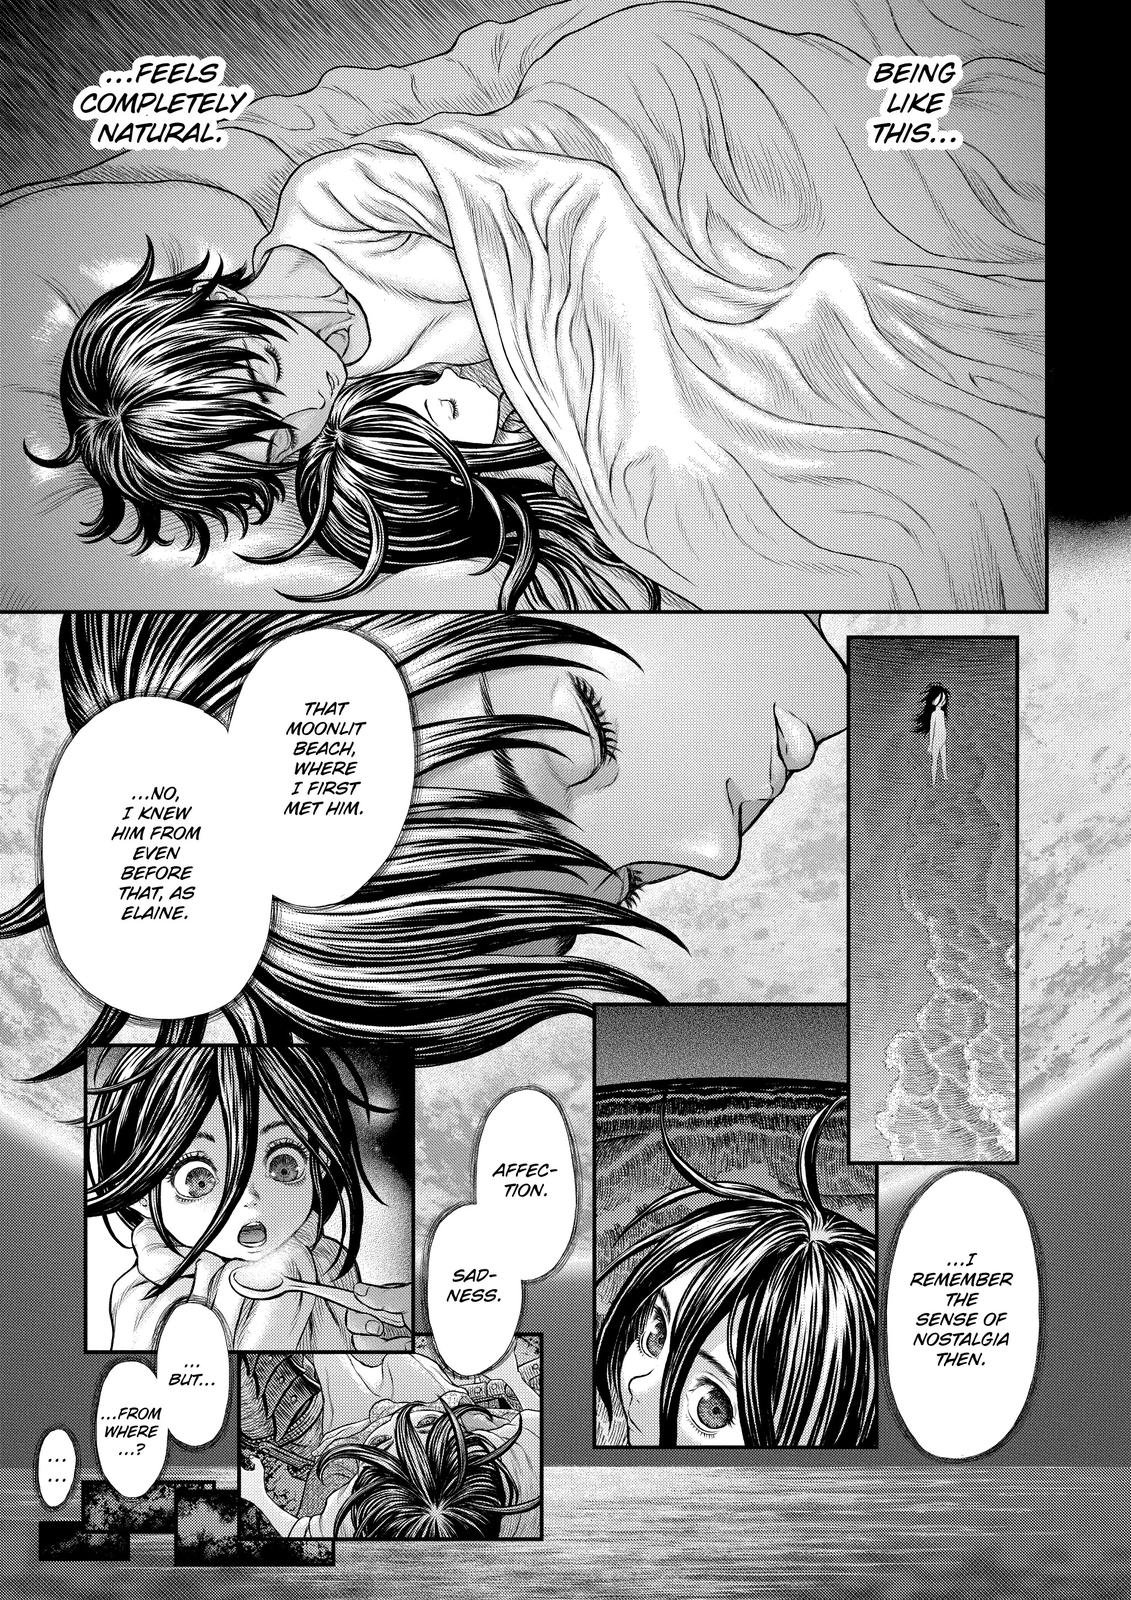 Berserk Manga Chapter 364 image 19